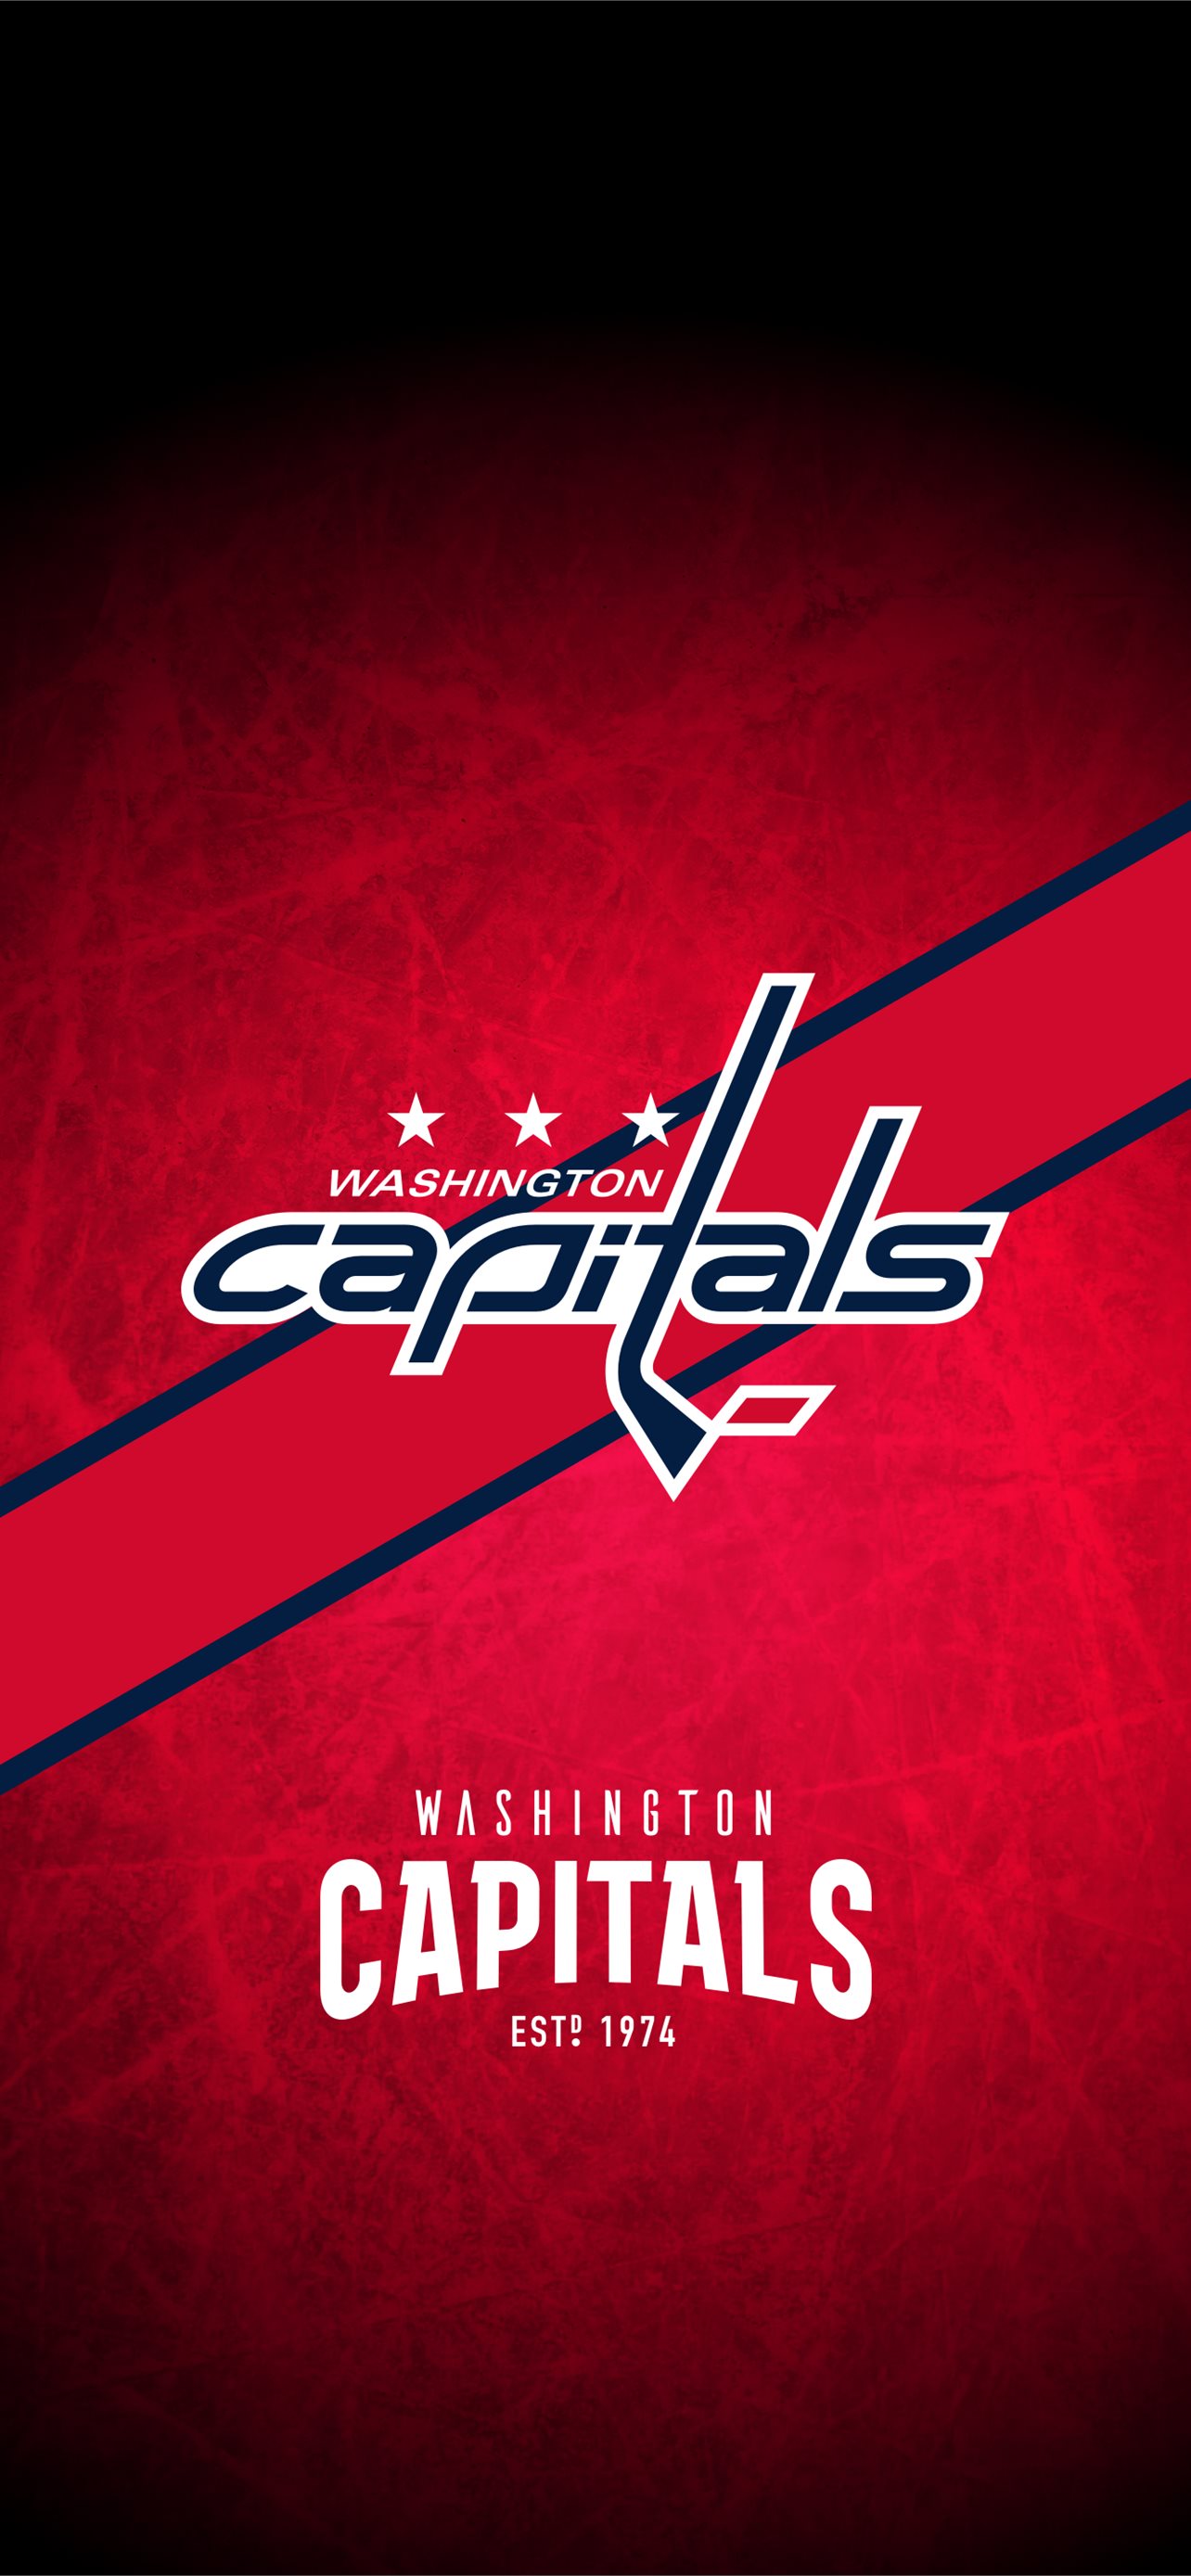 Wallpaper wallpaper sport logo NHL hockey glitter checkered New York  Rangers images for desktop section спорт  download